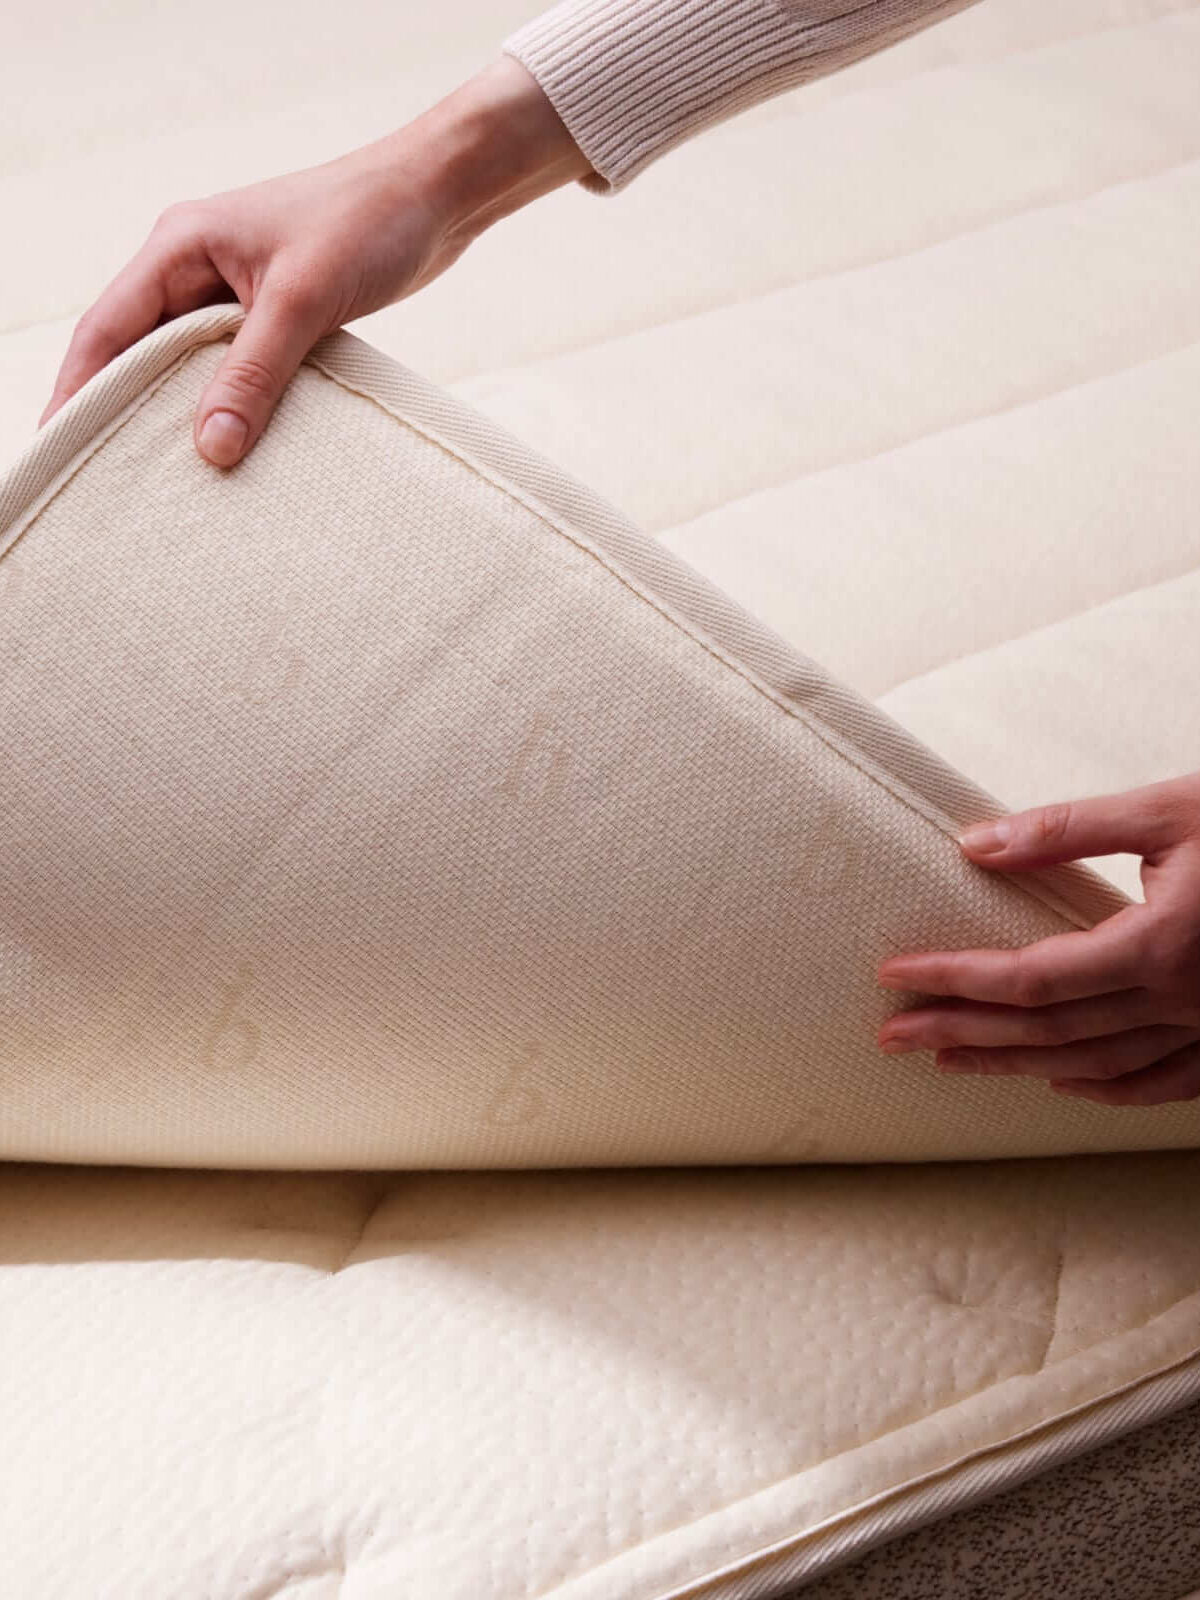 Hands fold back the Birch organic mattress topper.